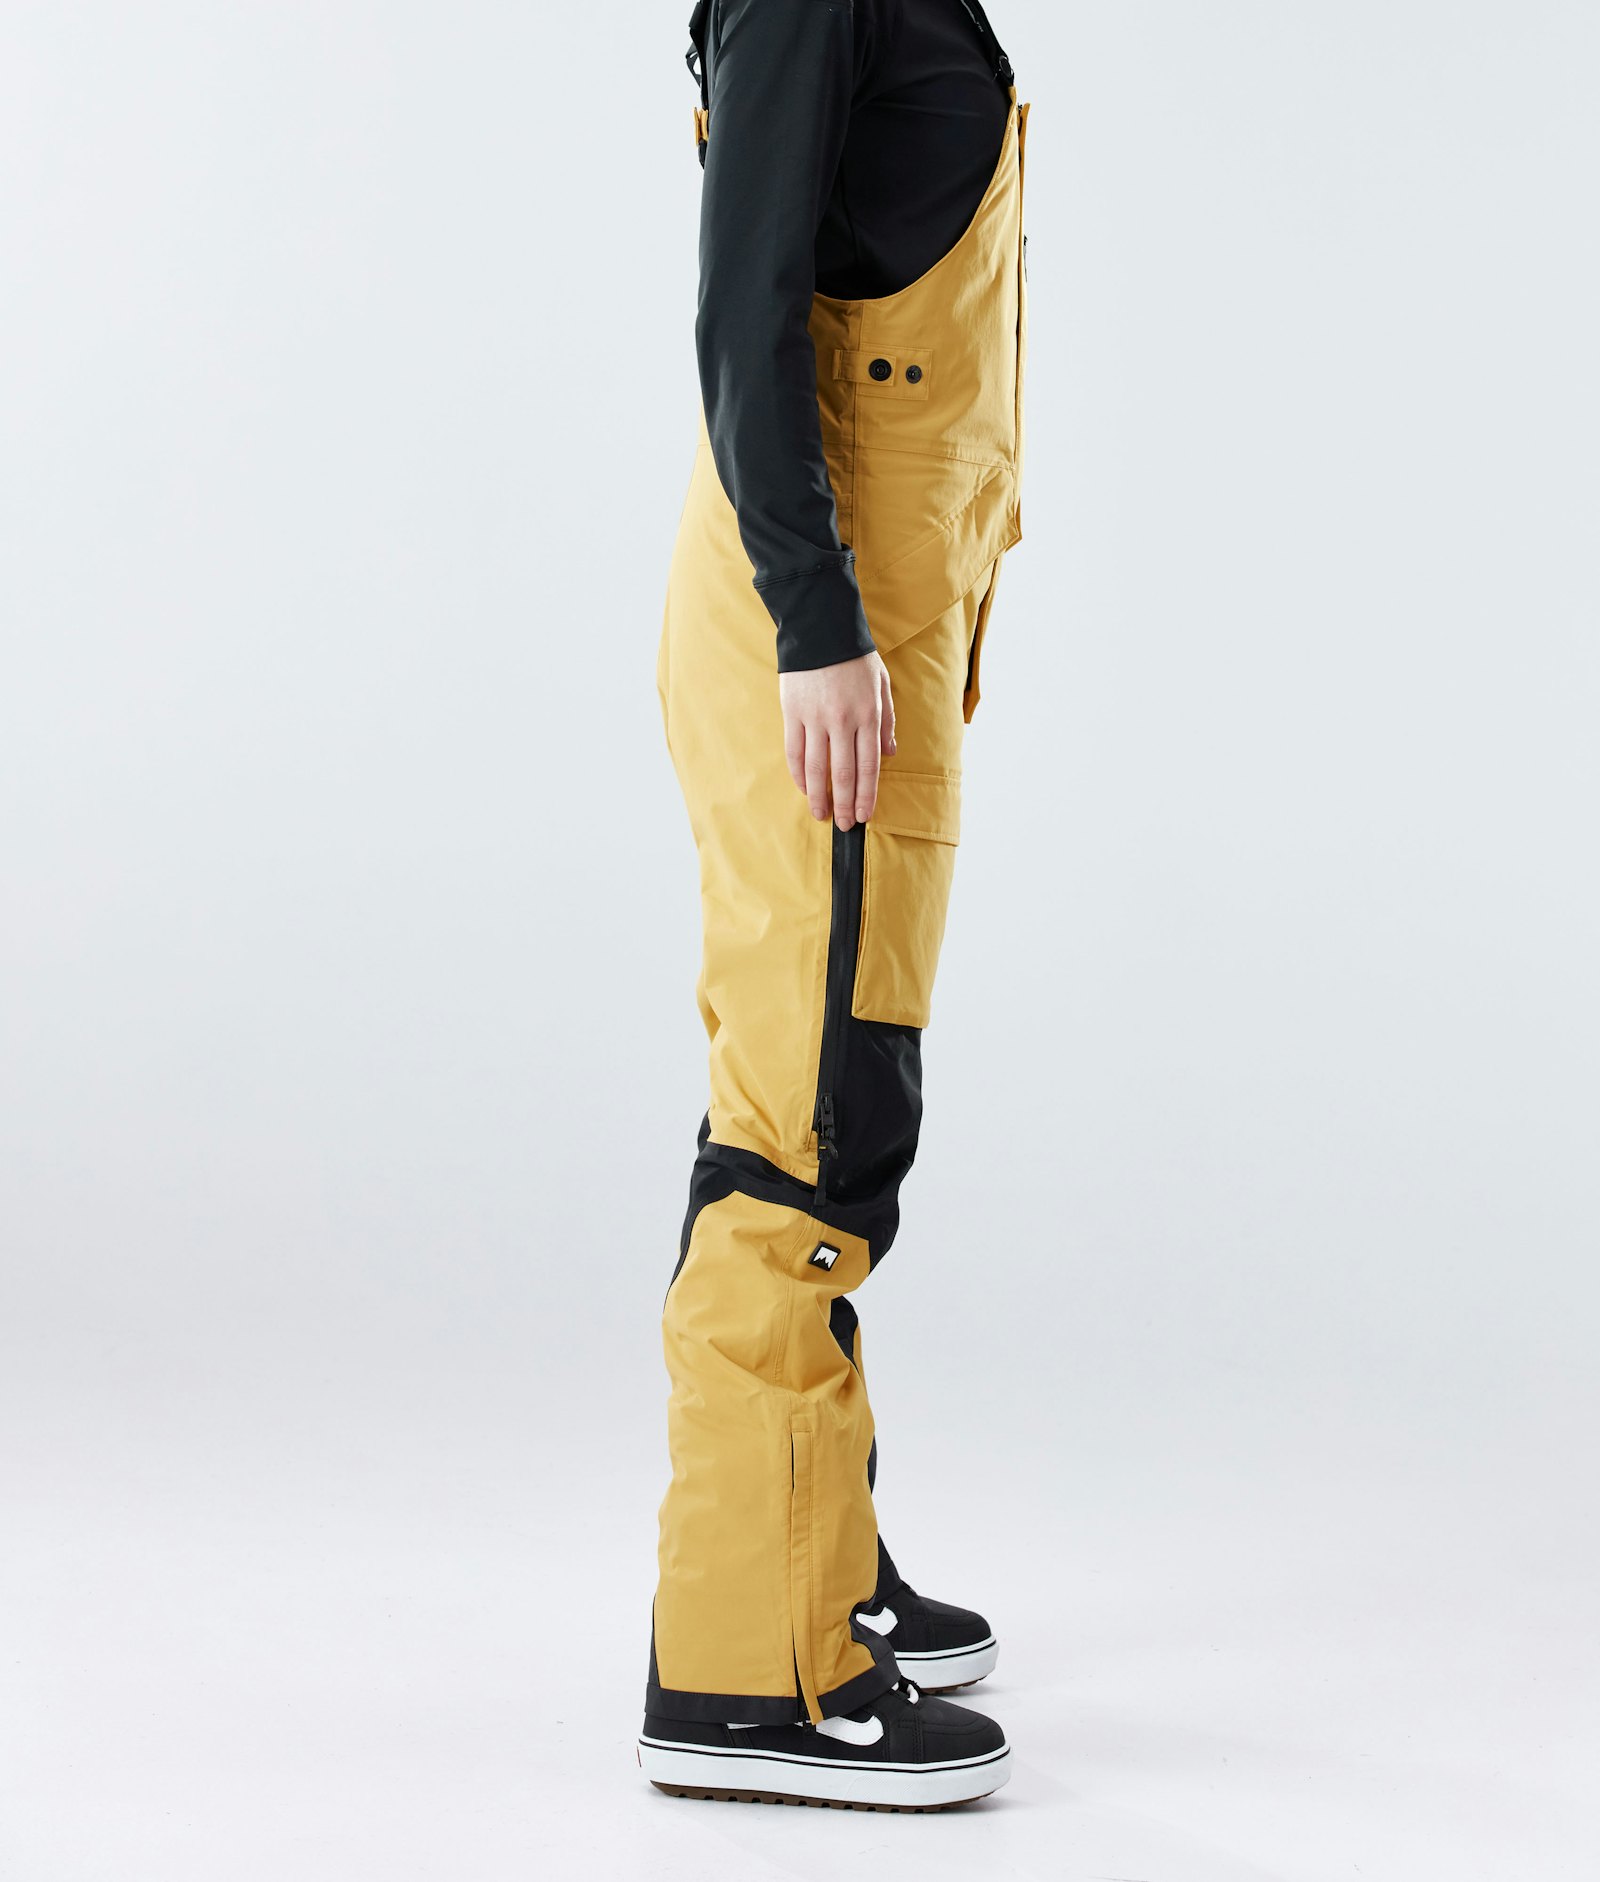 Fawk W 2020 Spodnie Snowboardowe Kobiety Yellow/Black